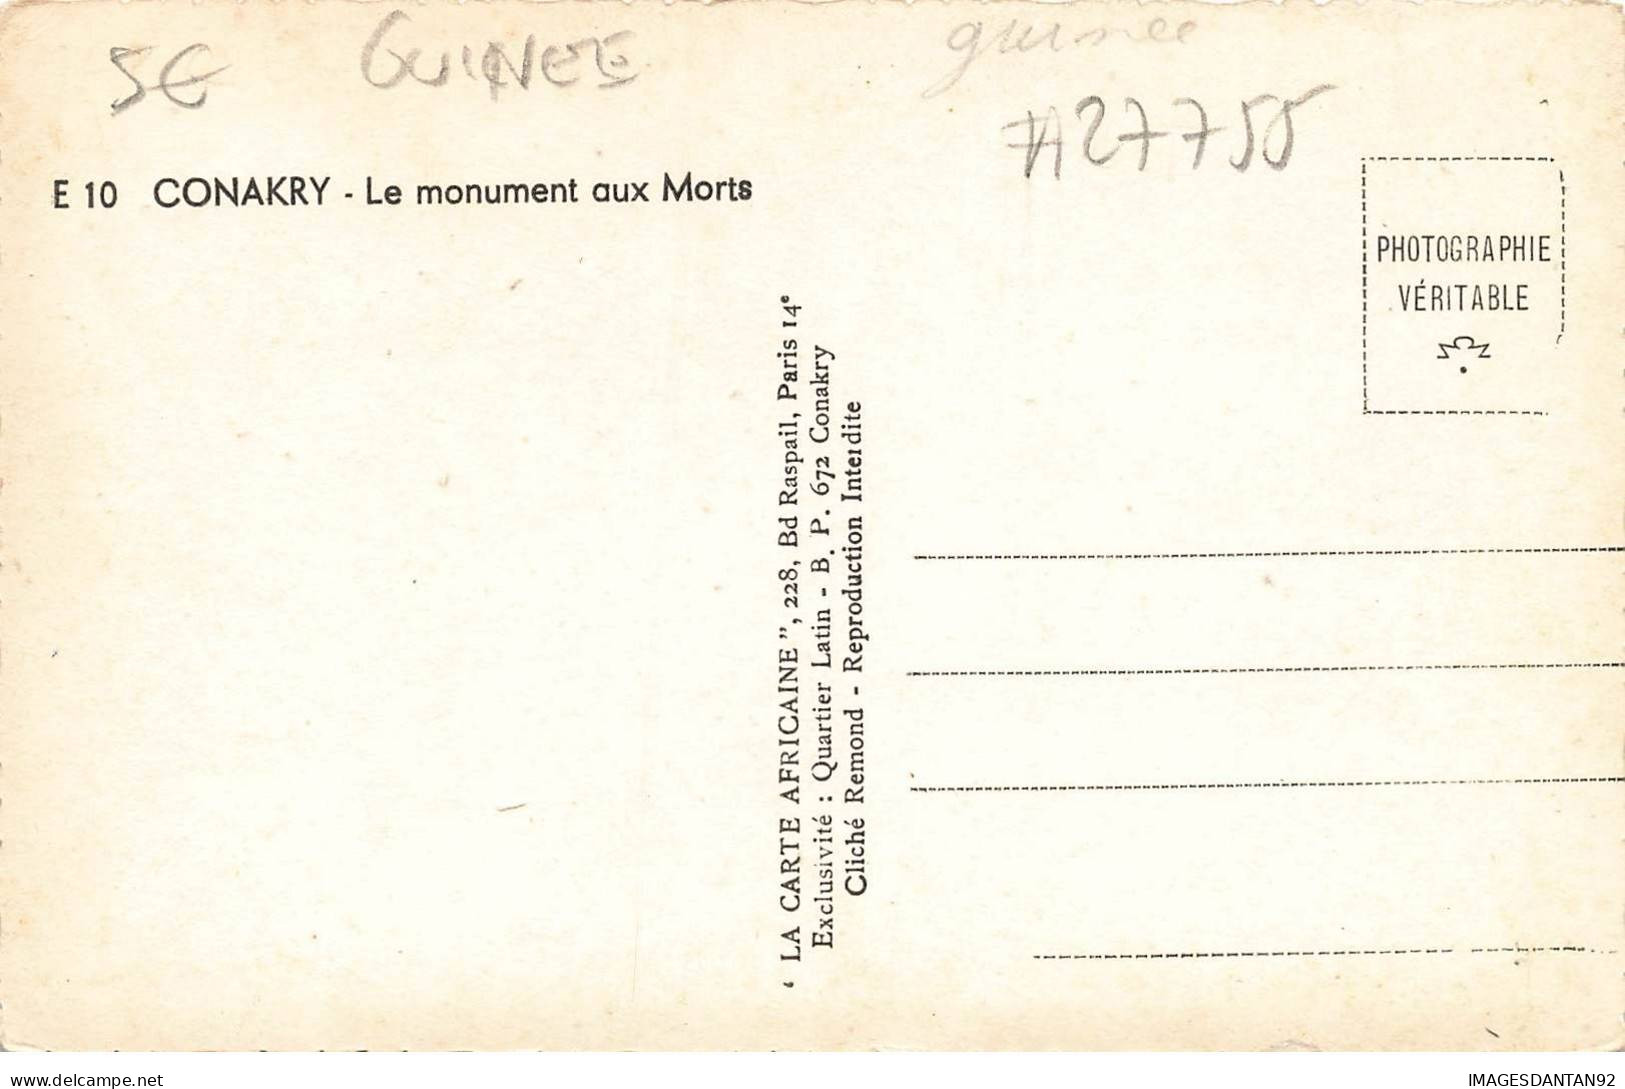 GUINEE #27755 CONAKRY MONUMENT AUX MORT - Guinée